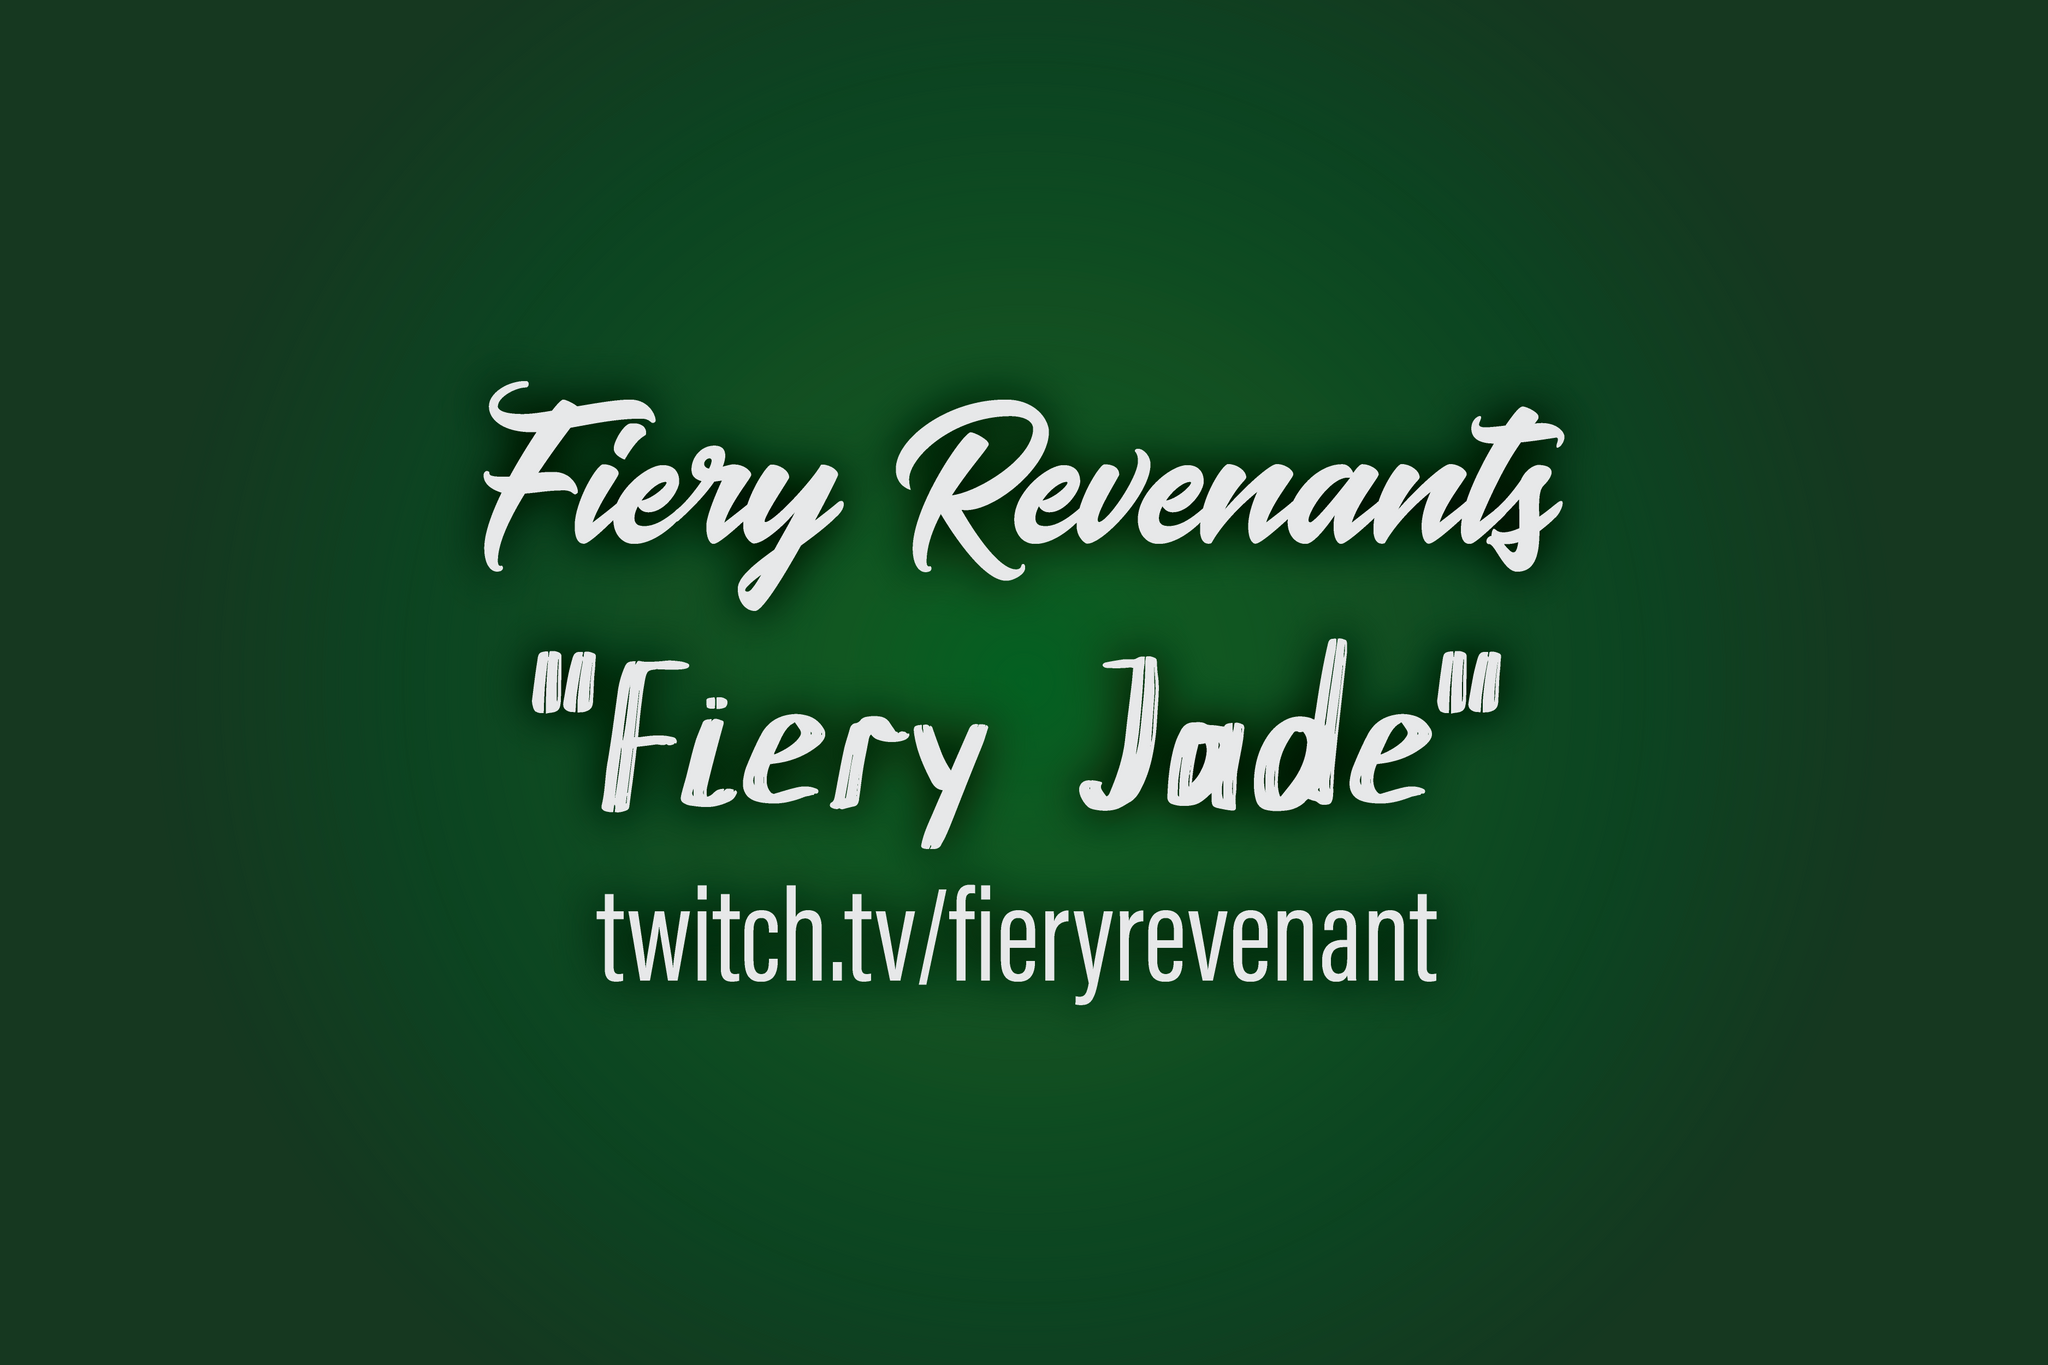 FieryRevenant's Fiery Jade